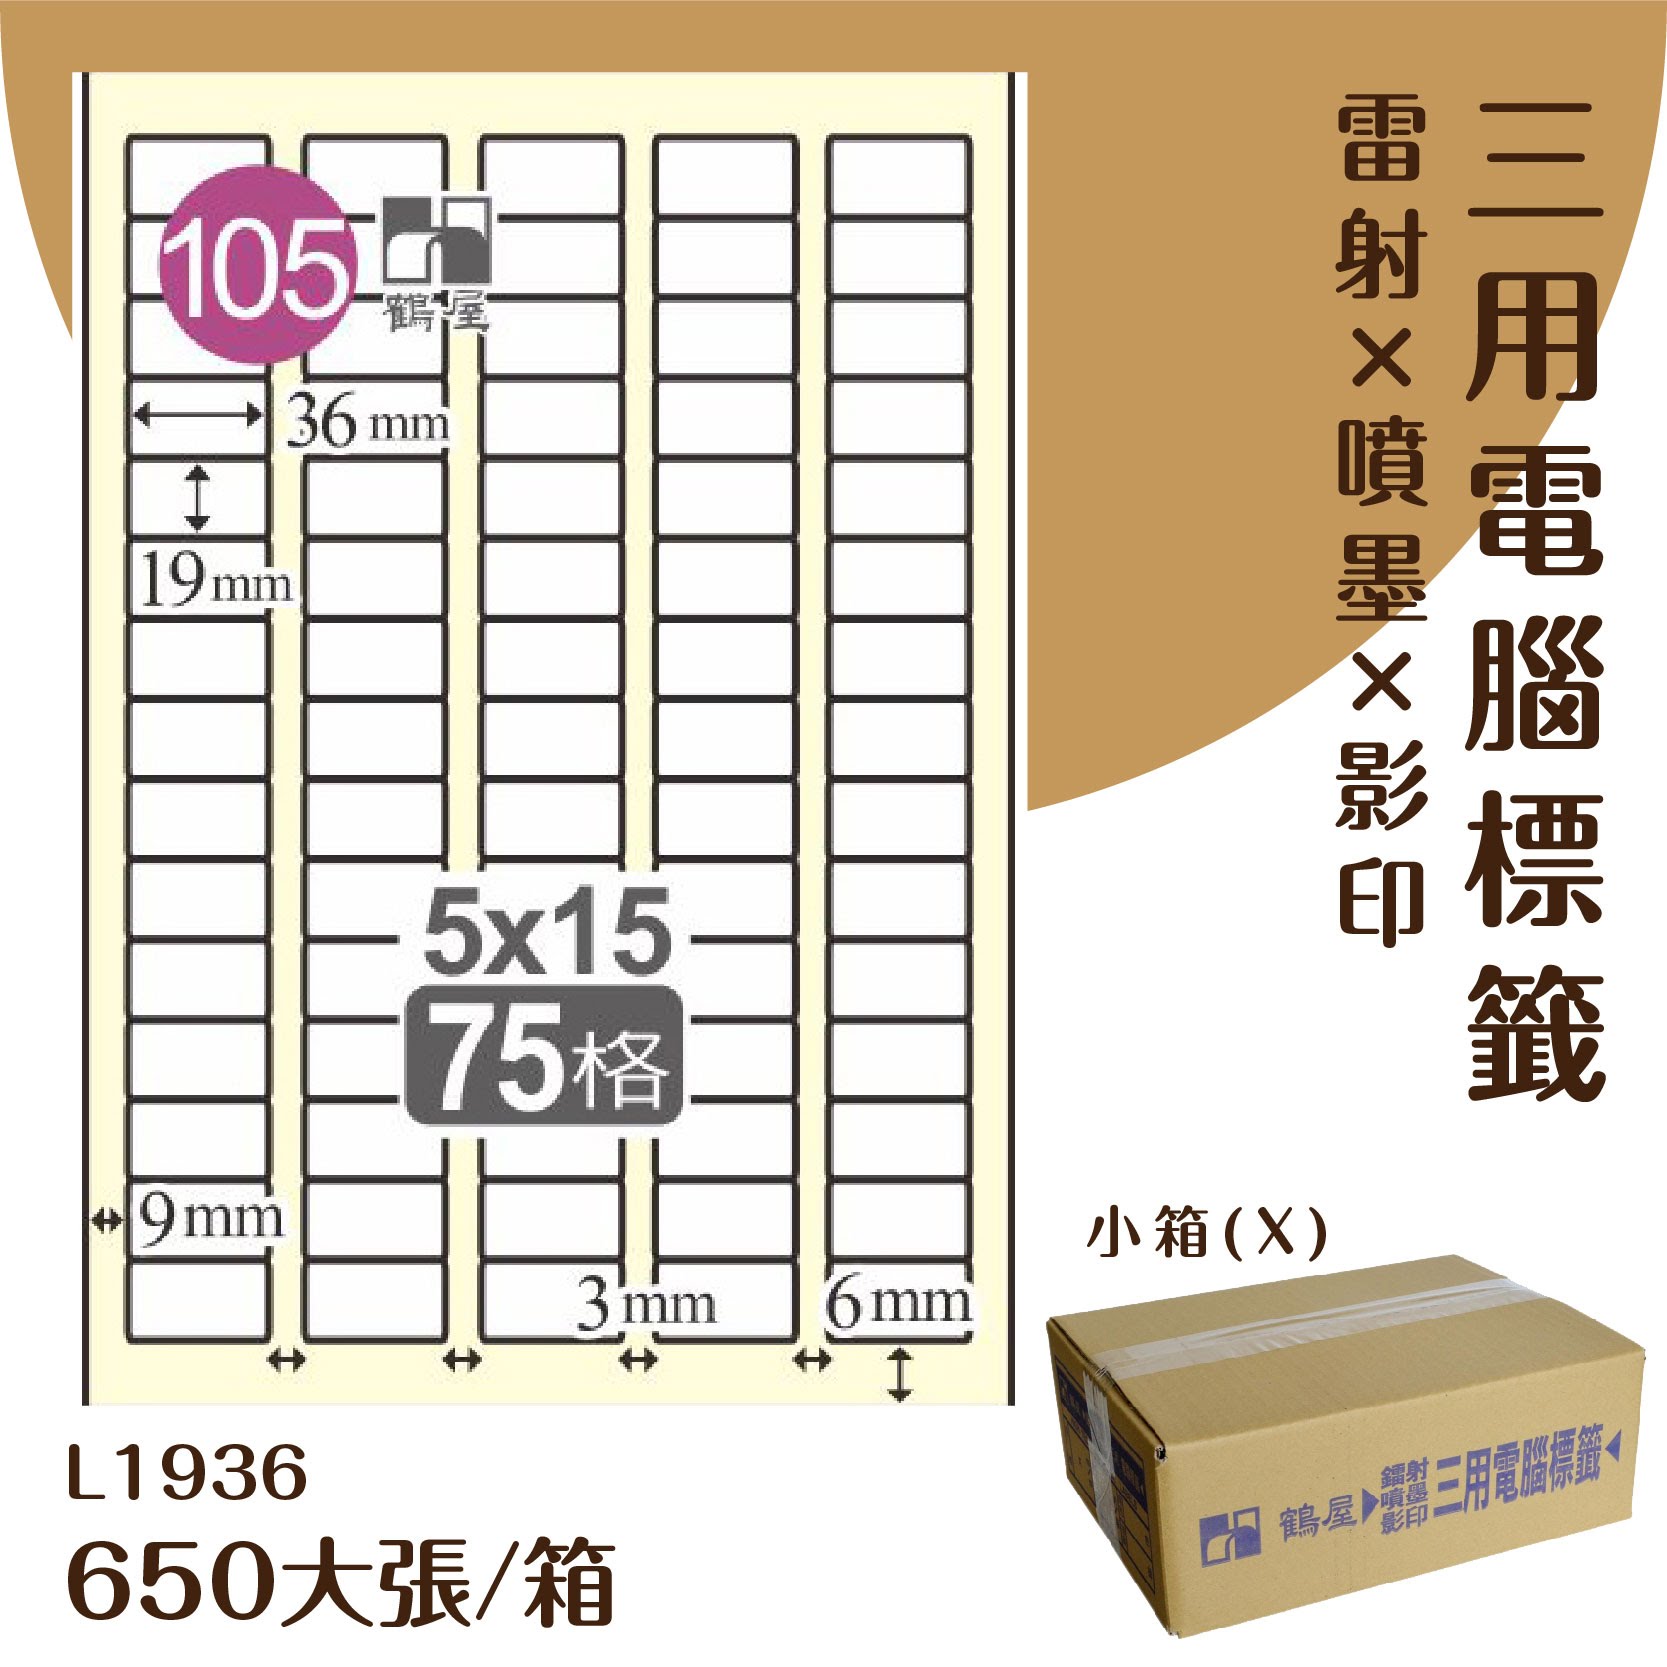 【優質好物】鶴屋 電腦標籤紙-白色 L1936 75格 650大張/小箱 (自黏貼紙/三用標籤/影印&雷射&噴墨)